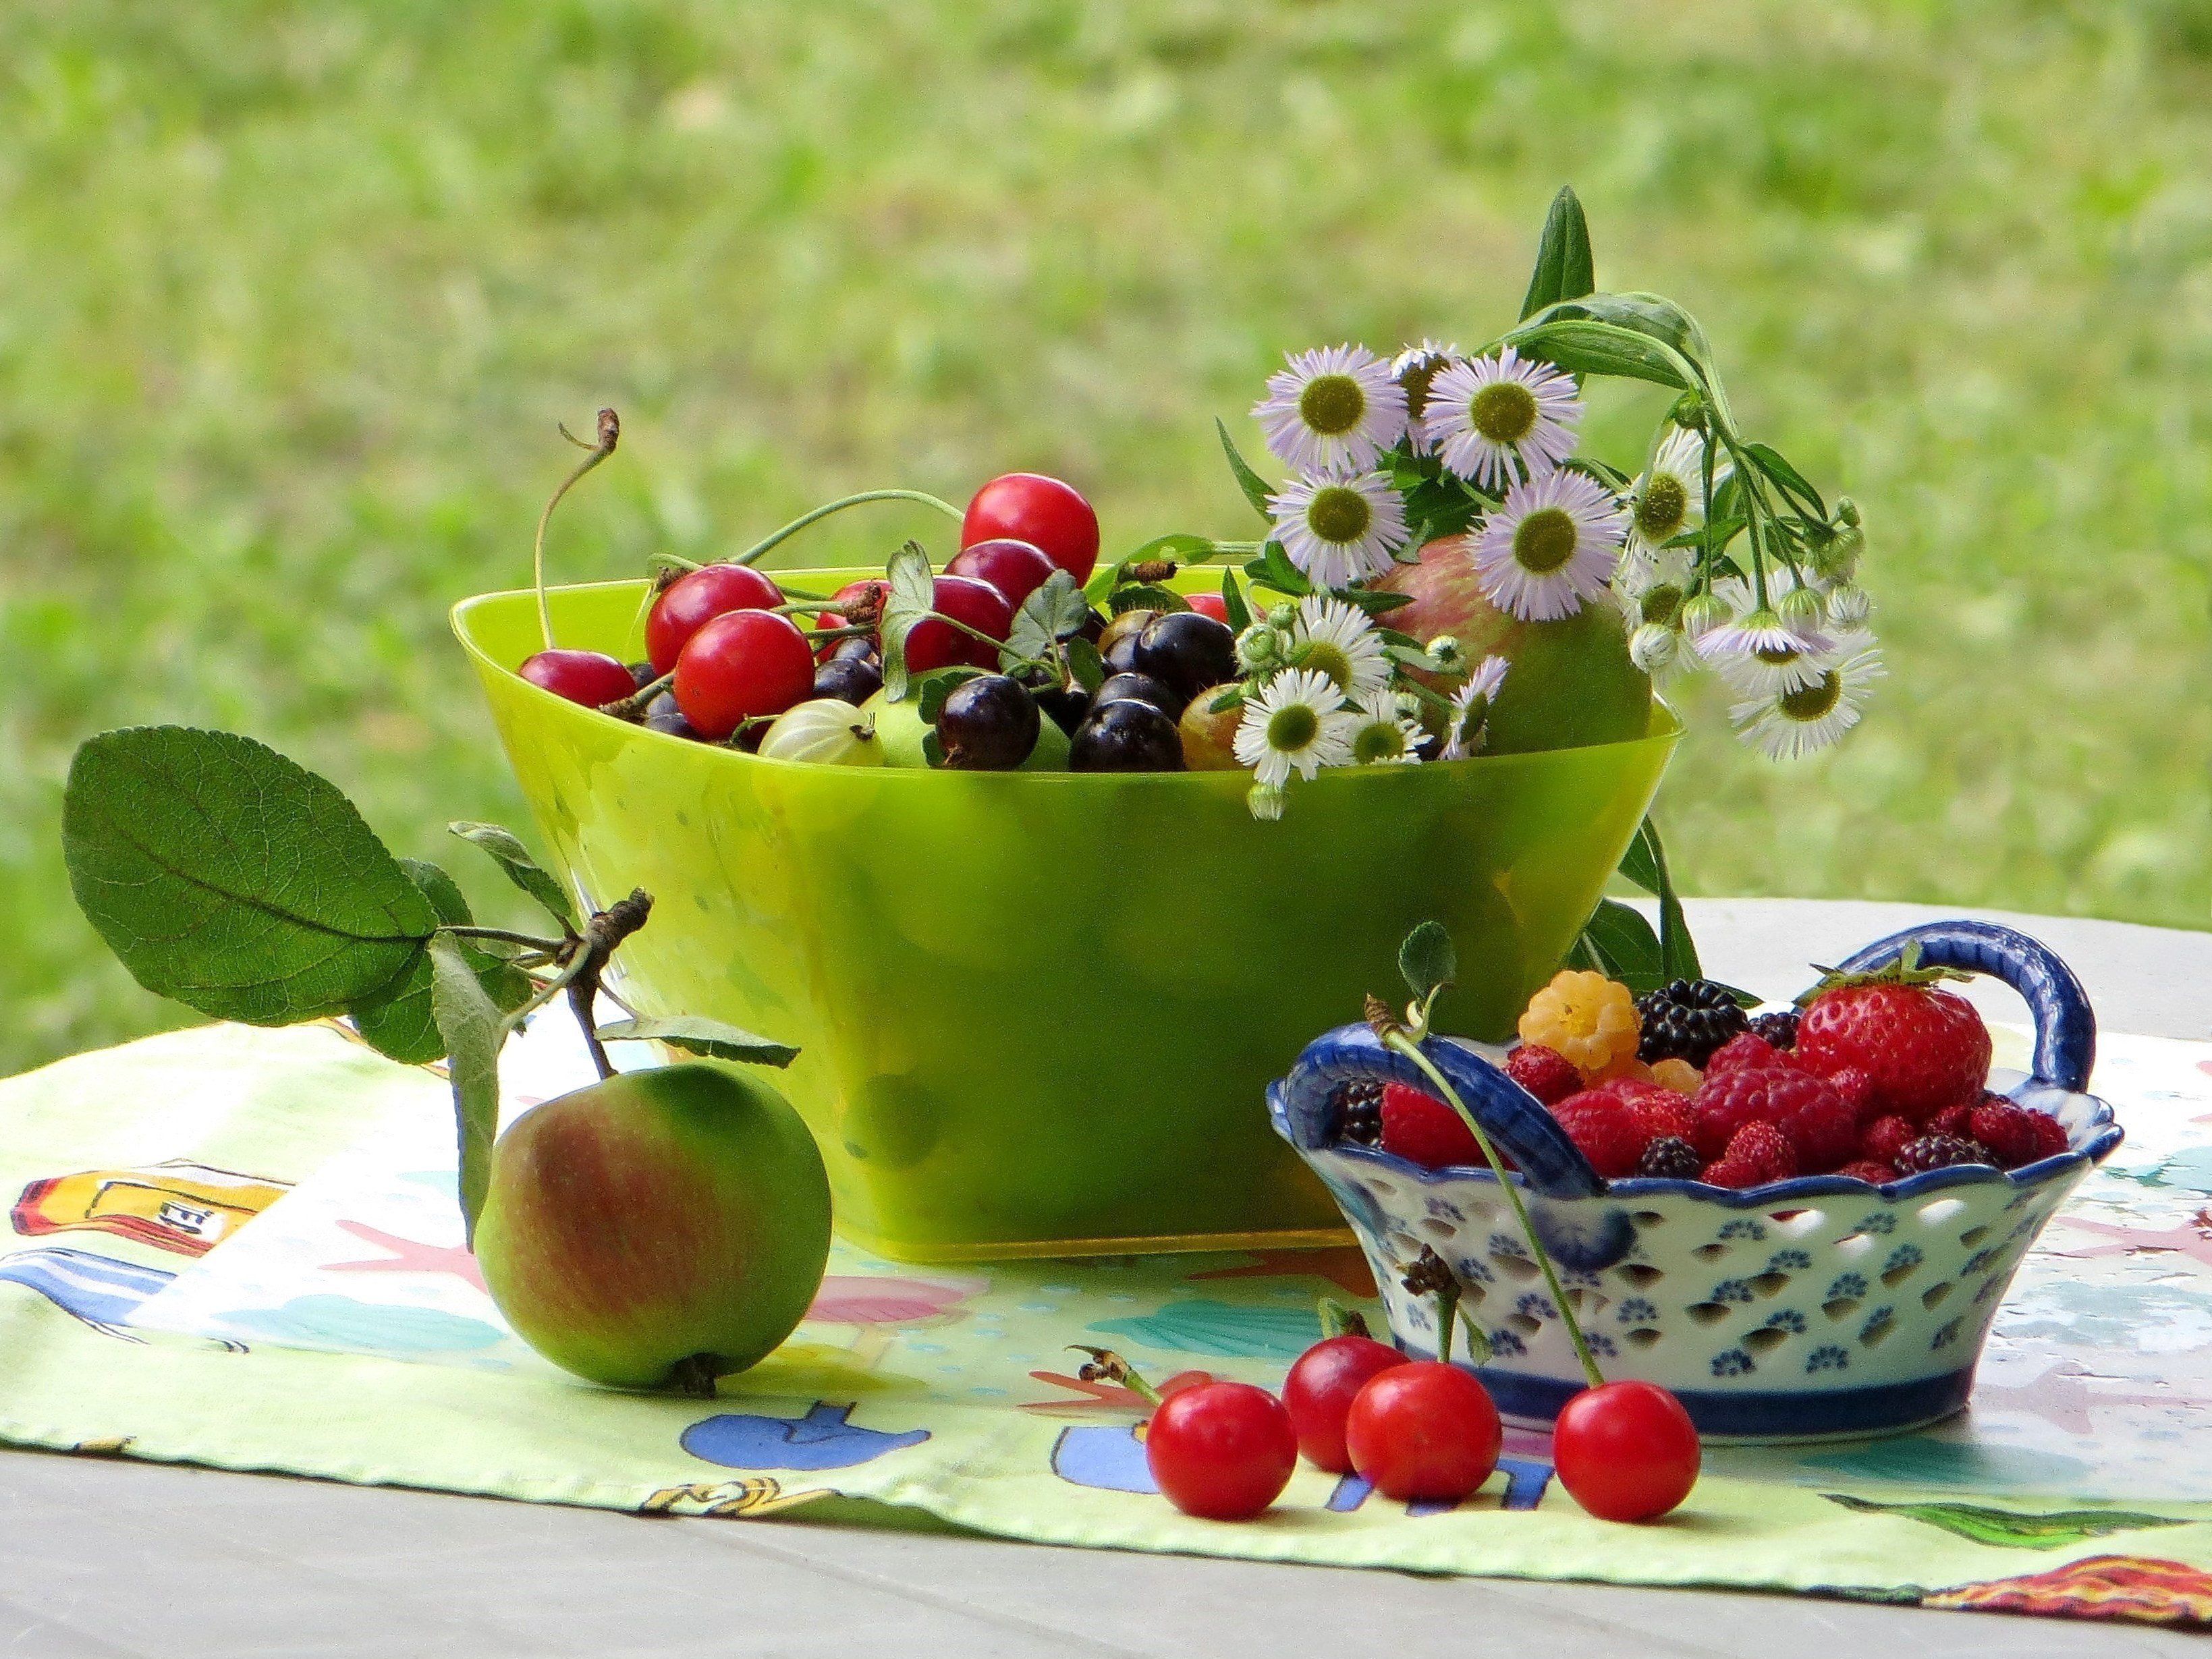 Натюрморт с цветами и ягодами